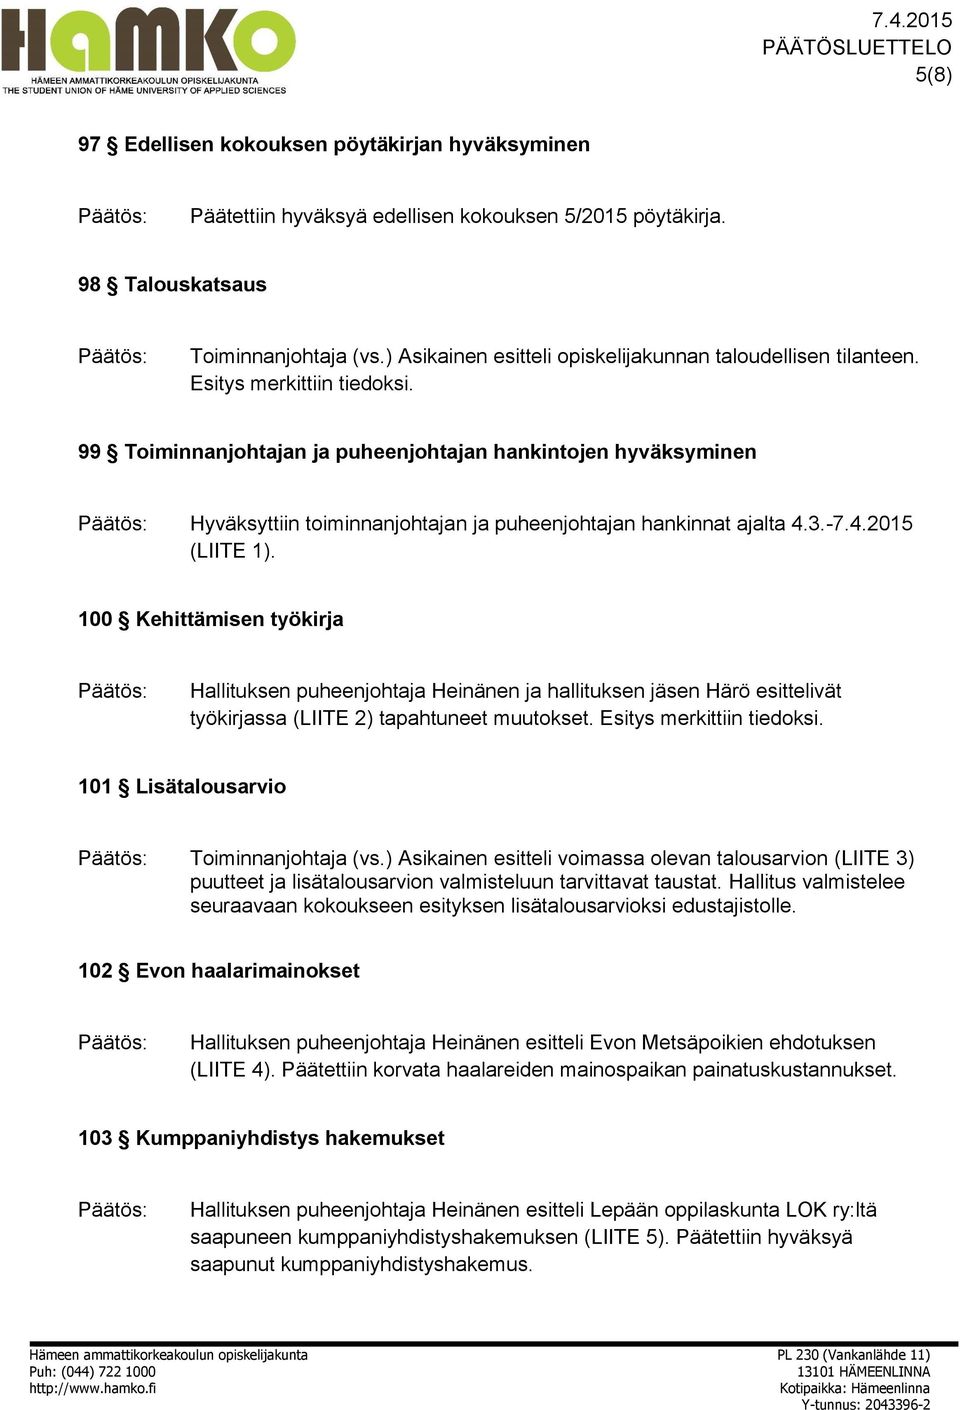 99 Toiminnanjohtajan ja puheenjohtajan hankintojen hyväksyminen Hyväksyttiin toiminnanjohtajan ja puheenjohtajan hankinnat ajalta 4.3.-7.4.2015 (LIITE 1).